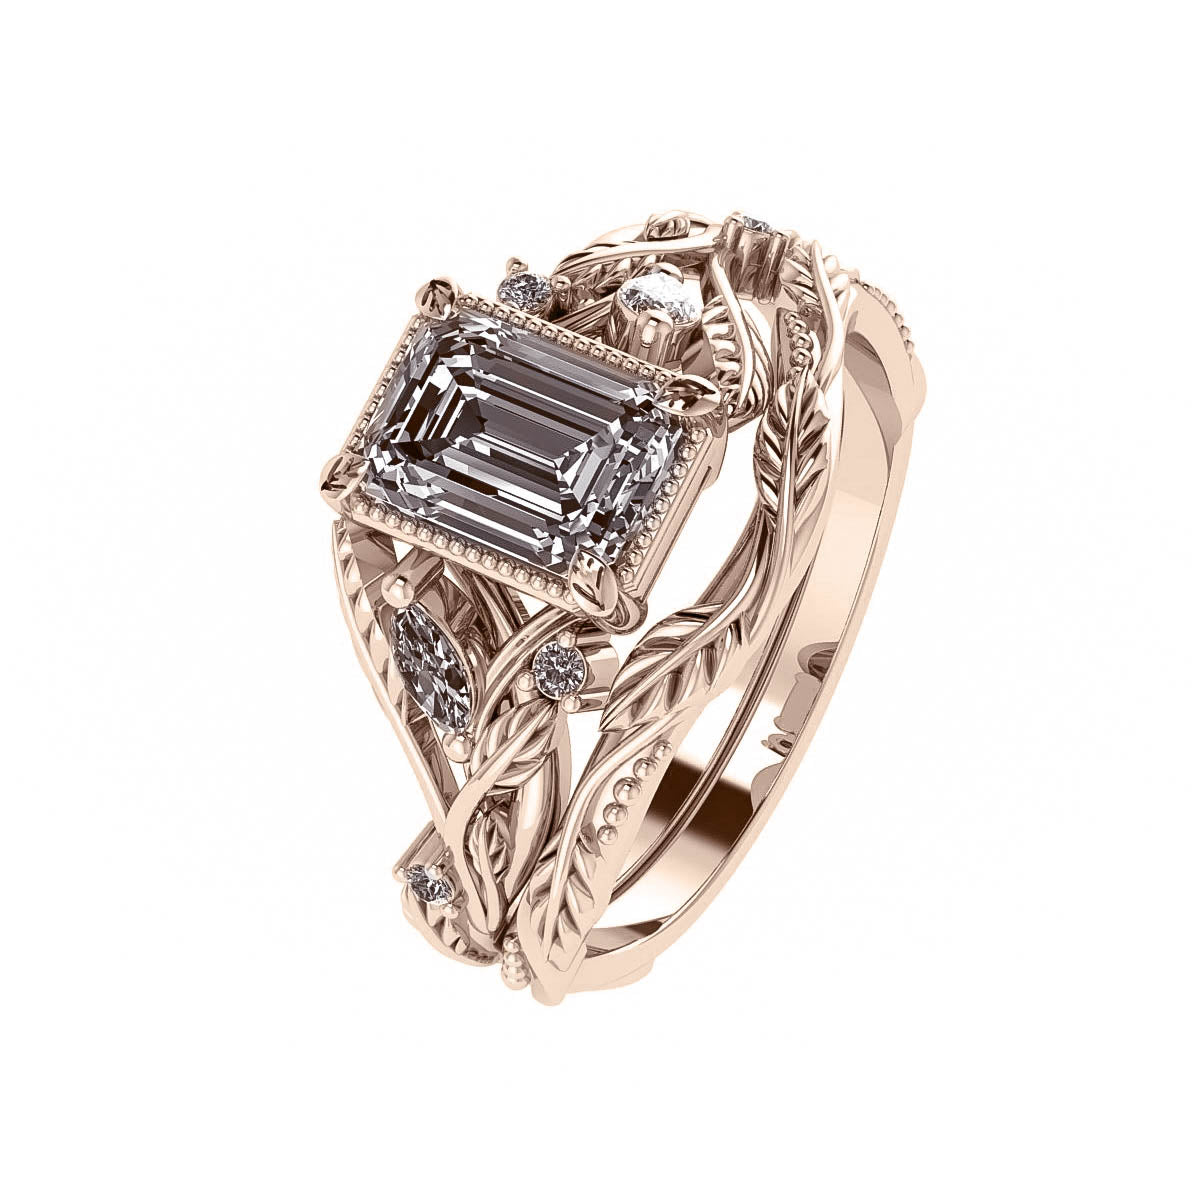 Patricia asymmetric | custom bridal ring set with emerald cut gemstone 7x5 mm - Eden Garden Jewelry™